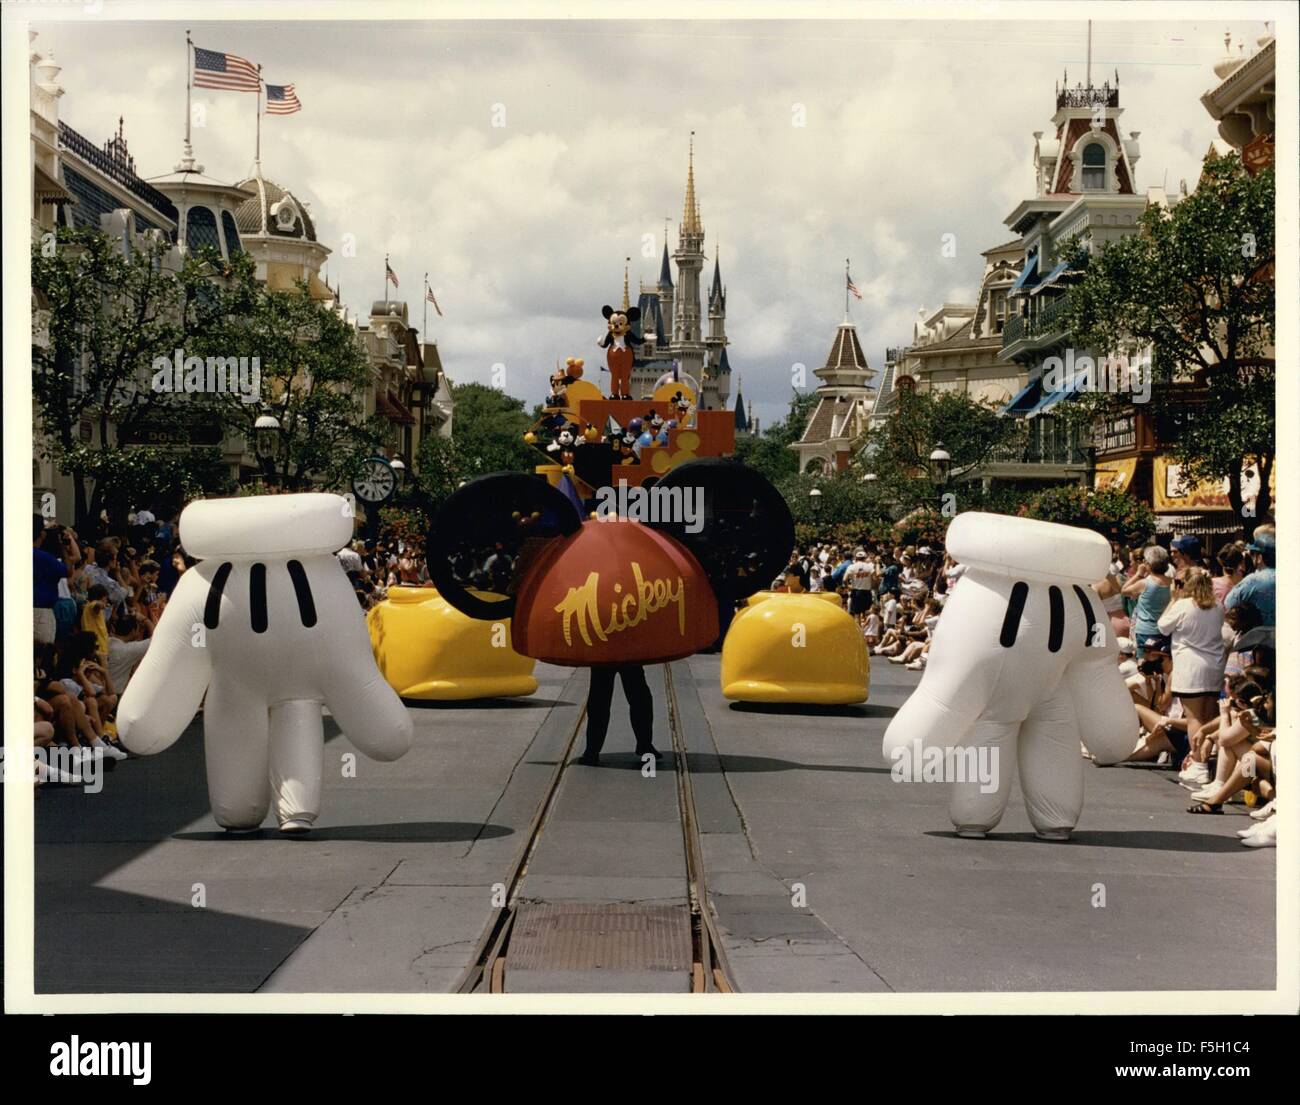 1994 - sehr vertraut Mütze, Handschuhe und Schuhe! Übergroße Mickey-mouse- Bekleidung gehört die Zaniness '' Mickey Mania'' Parade im Magic Kingdom  des Walt Disney World Resort. Tausende von Maus-verwandte Produkte sind in  der